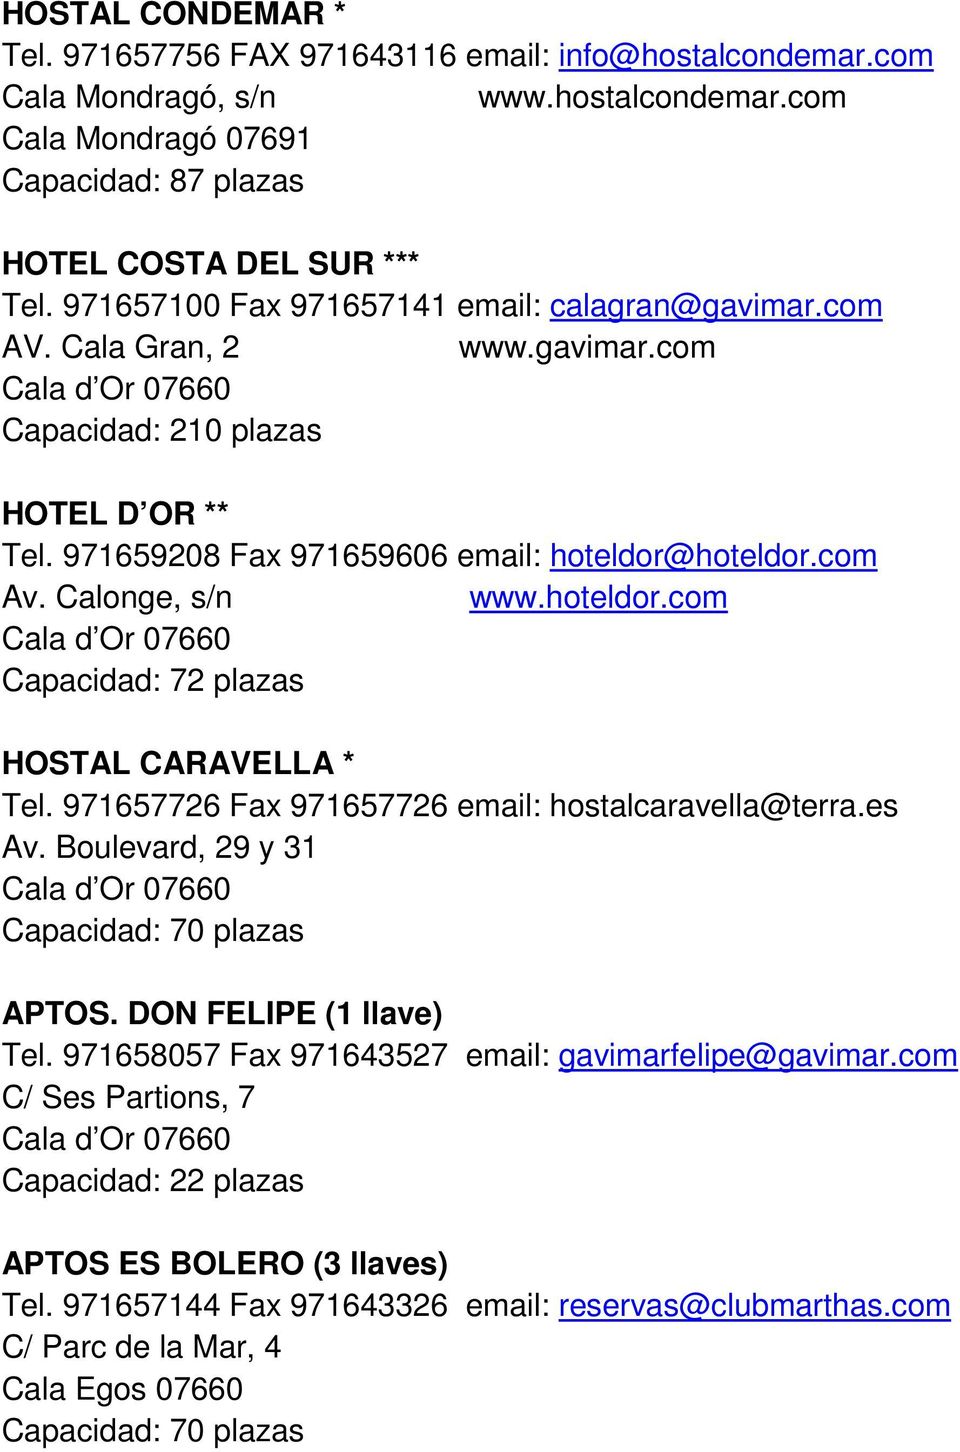 hoteldor.com Capacidad: 72 plazas HOSTAL CARAVELLA * Tel. 971657726 Fax 971657726 email: hostalcaravella@terra.es Av. Boulevard, 29 y 31 Capacidad: 70 plazas APTOS. DON FELIPE (1 llave) Tel.